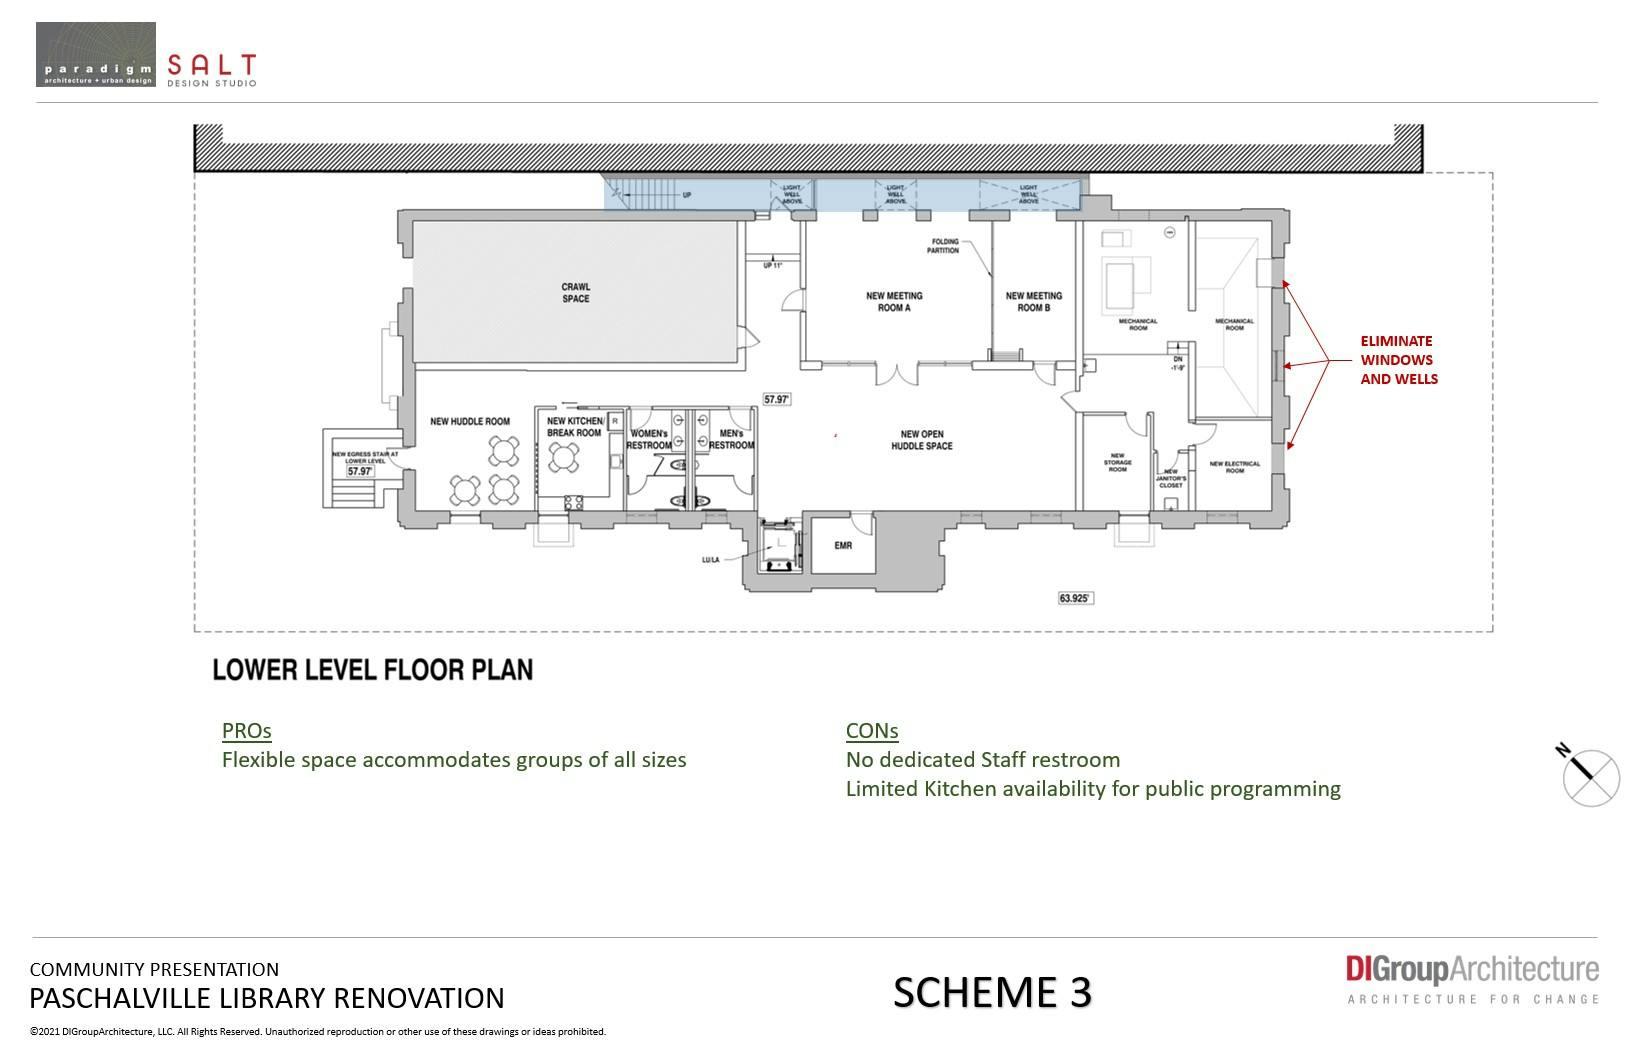 Lower Level Floor Plan - Scheme 3